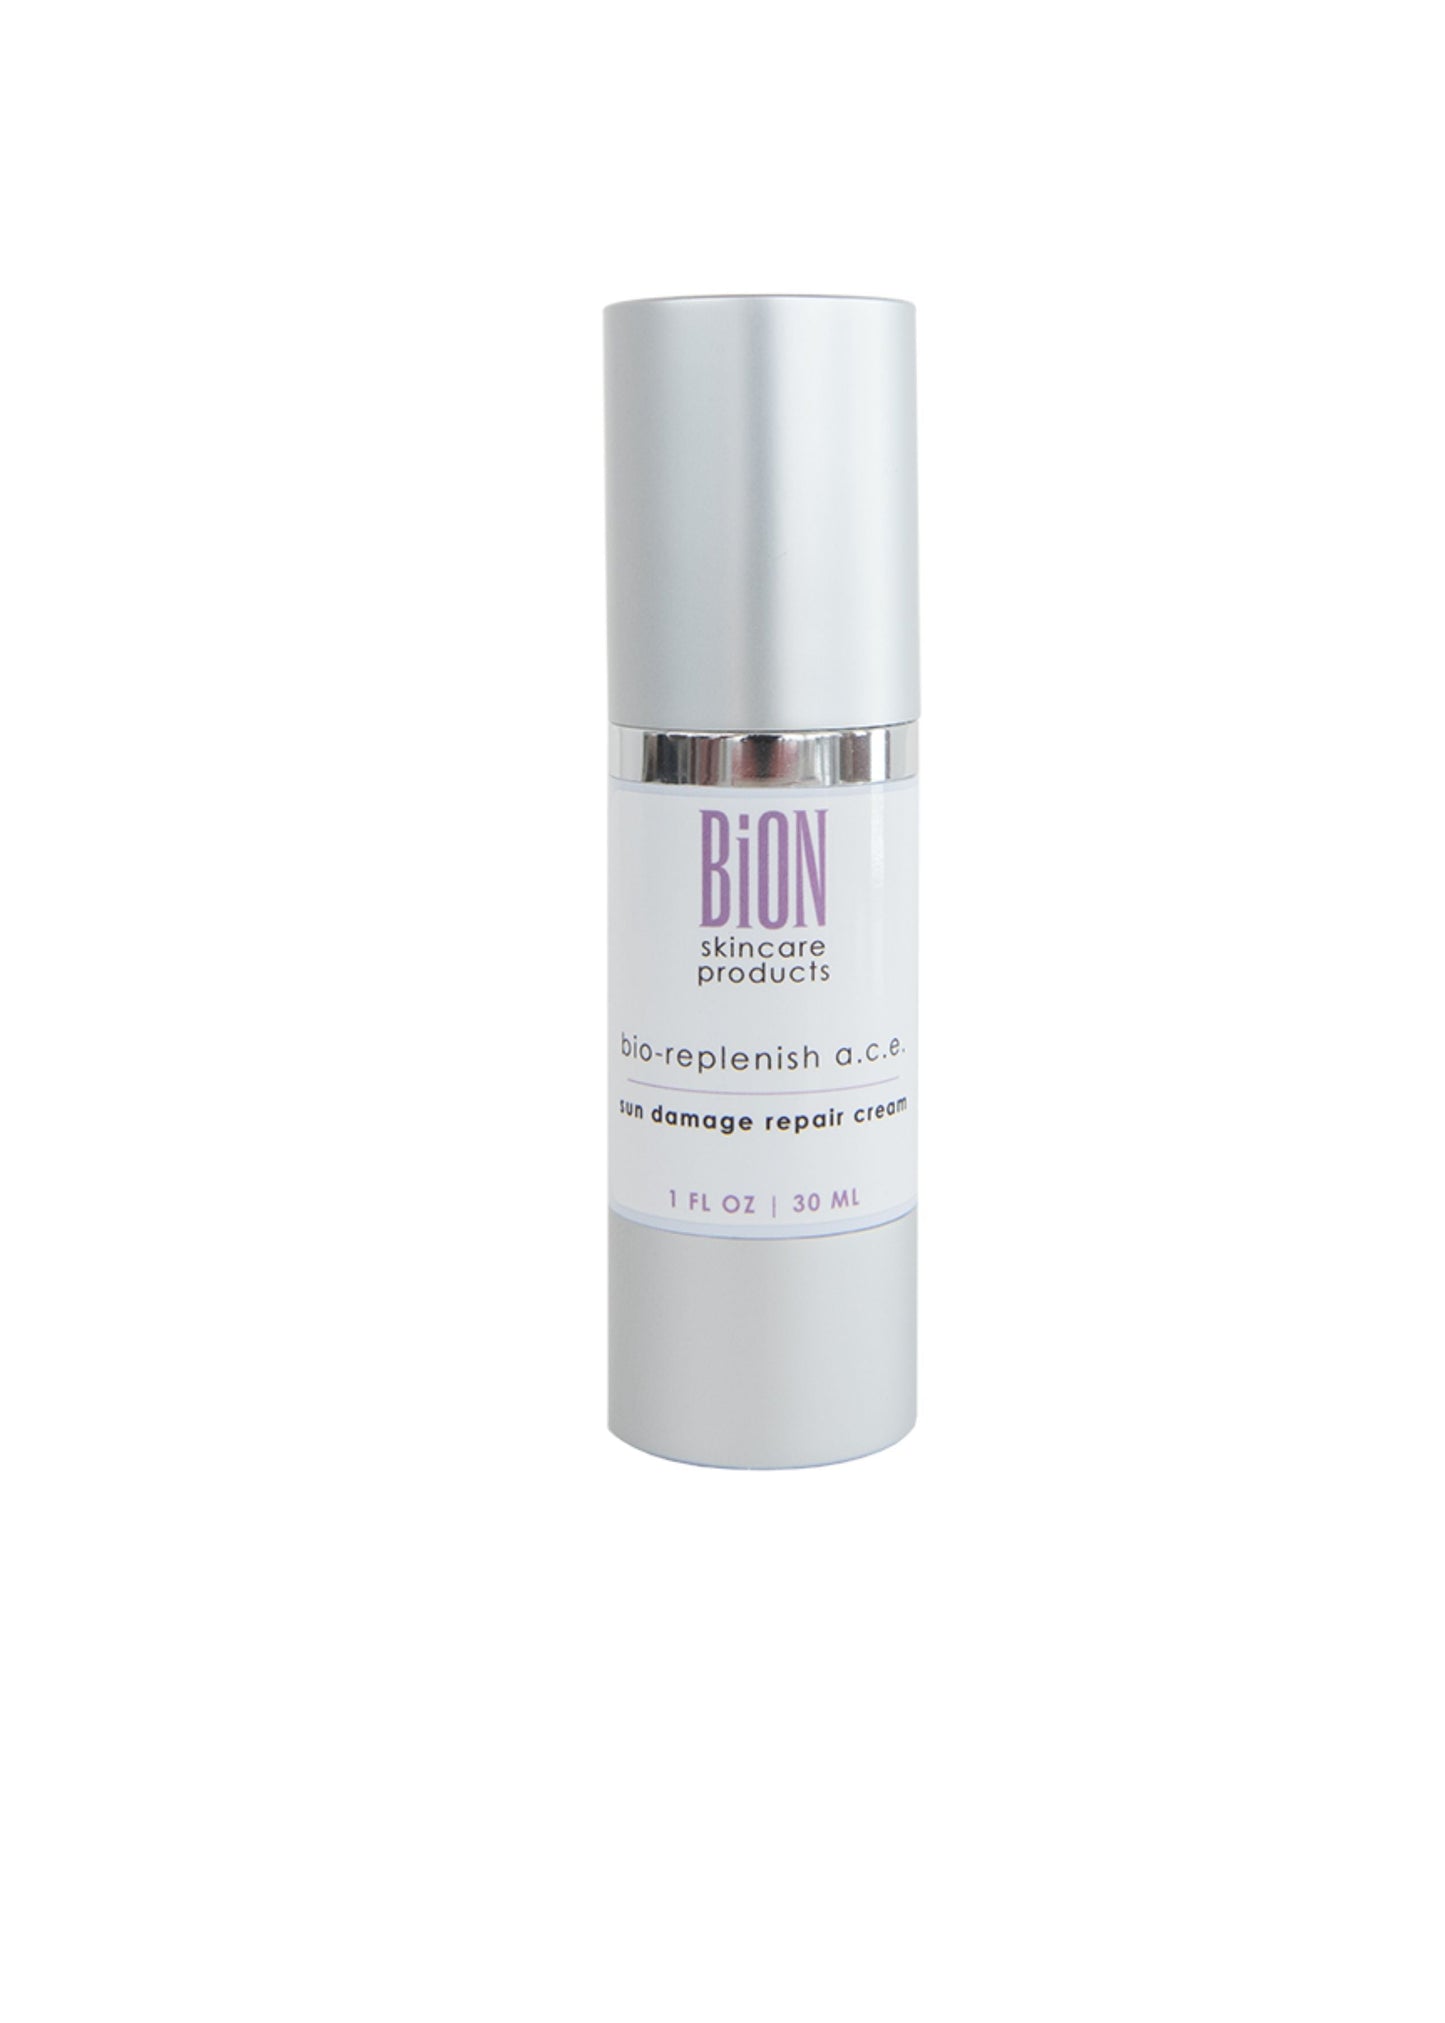 Bion Bio-replenish A.C.E. Sun Damage Repair Cream